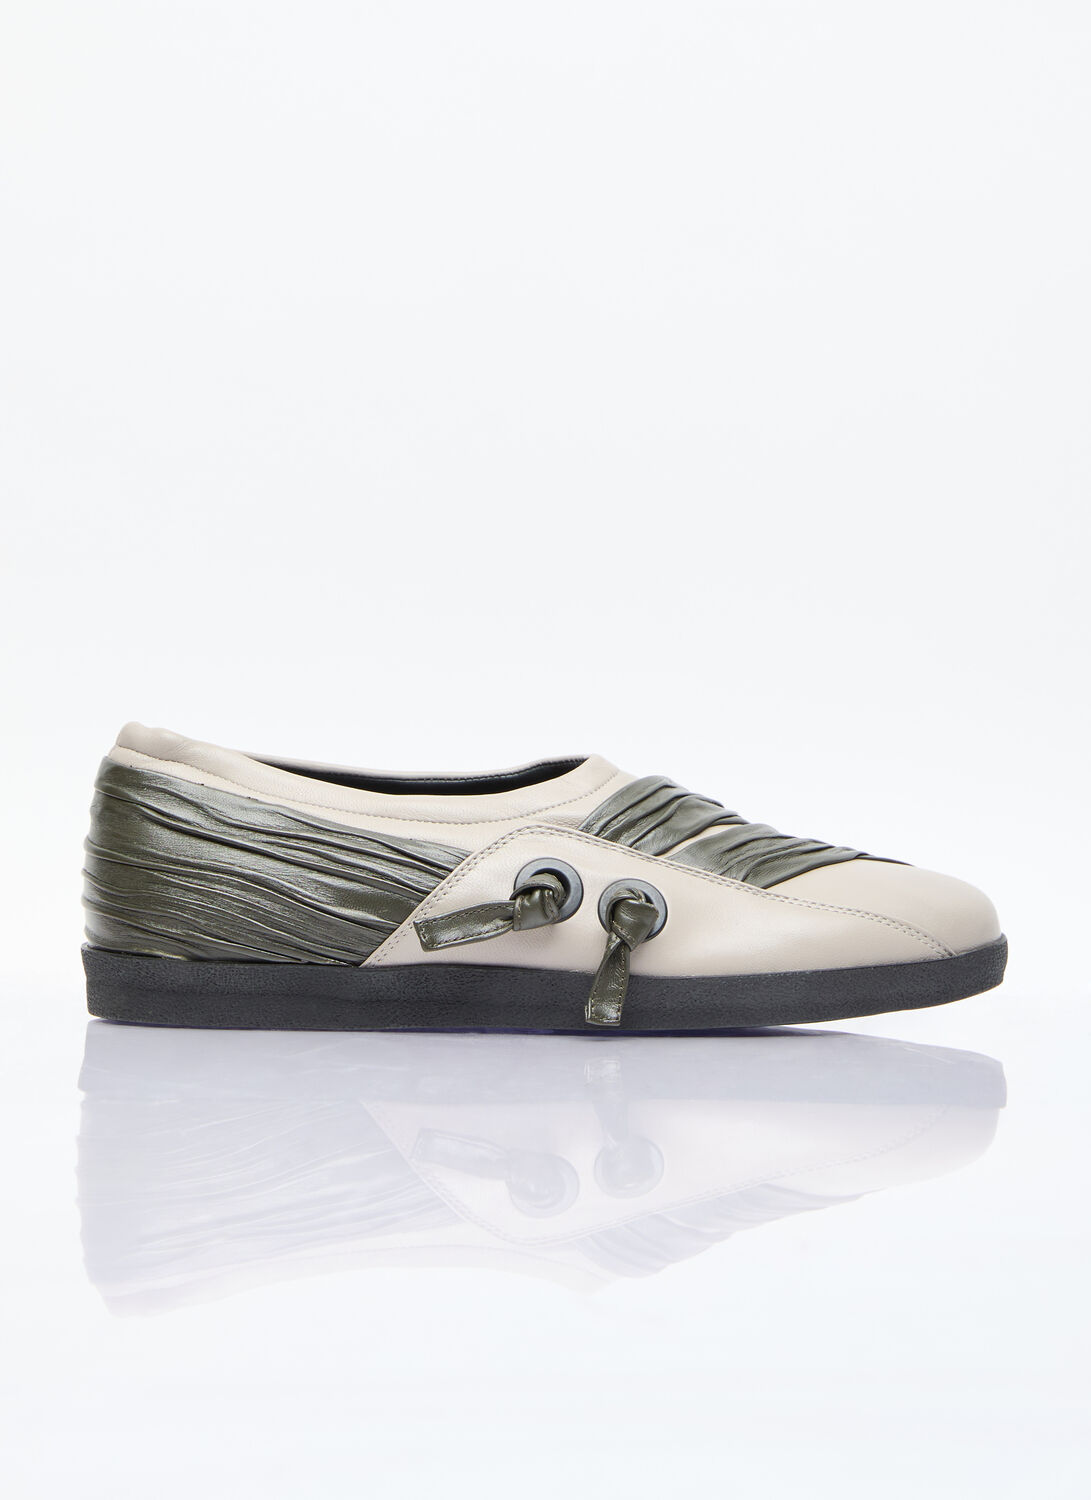 Kiko Kostadinov Wrinkled Slip-on Shoes In Beige